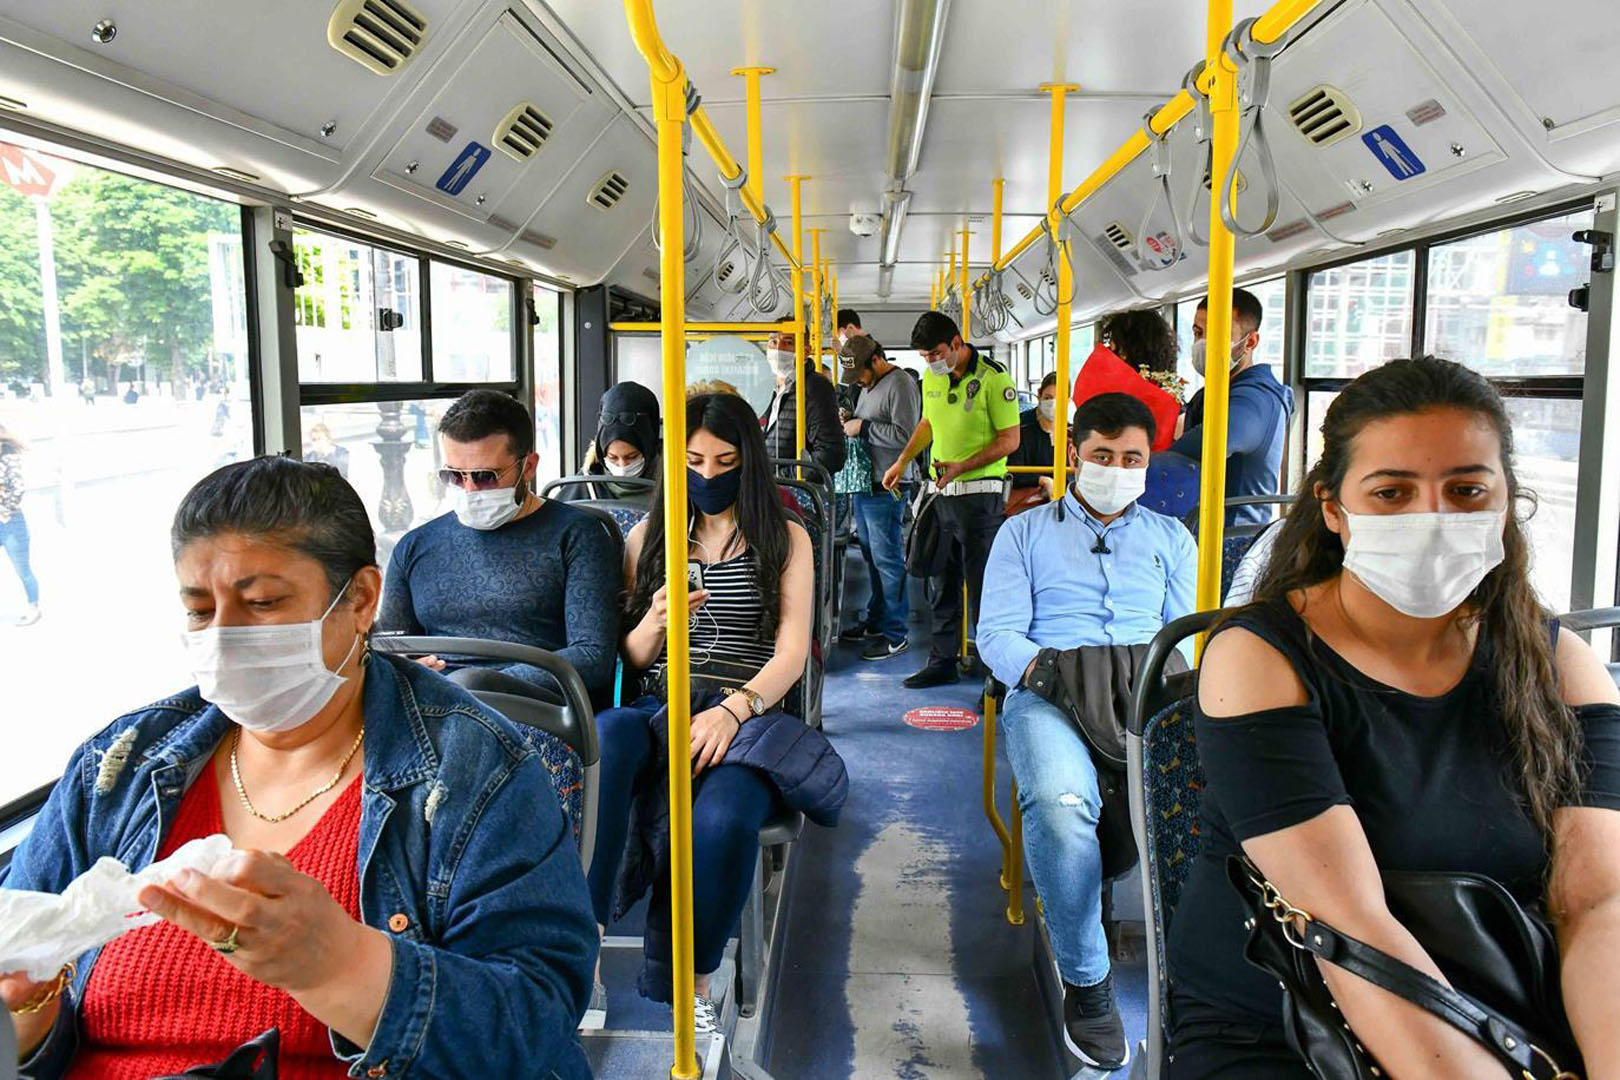 Toplu taşımada maske takma zorunluluğu kalktı mı, kaldırıldı mı 2022? Otobüs, Marmaray, metro ve hastaneler maske takmak zorunluluğu var mı?